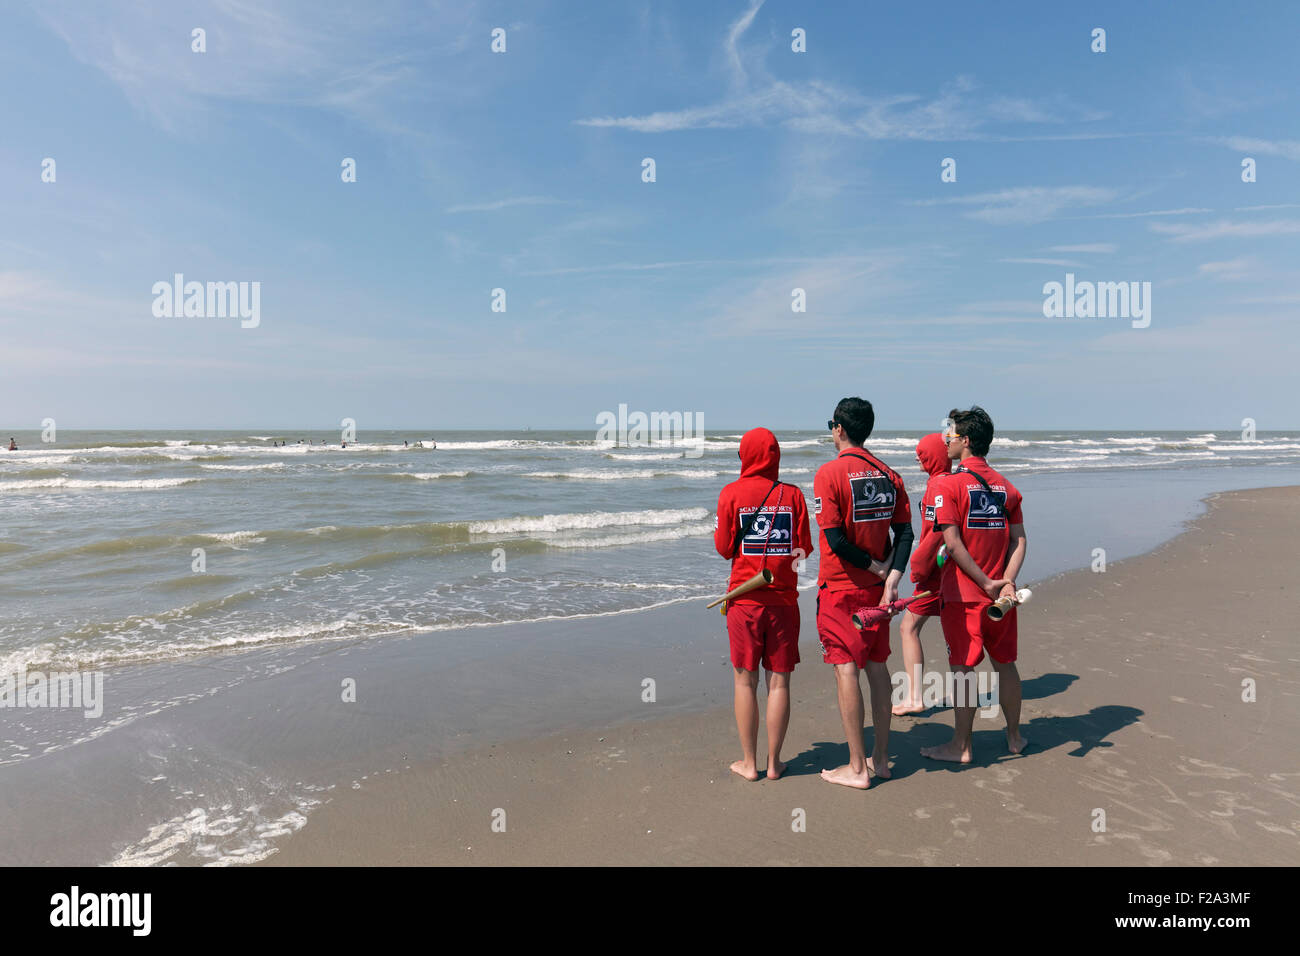 Vier junge Rettungsschwimmer beobachten das Meer vom Strand, Küste Nordsee, Belgien, De Haan, West-Flandern, Belgien Stockfoto